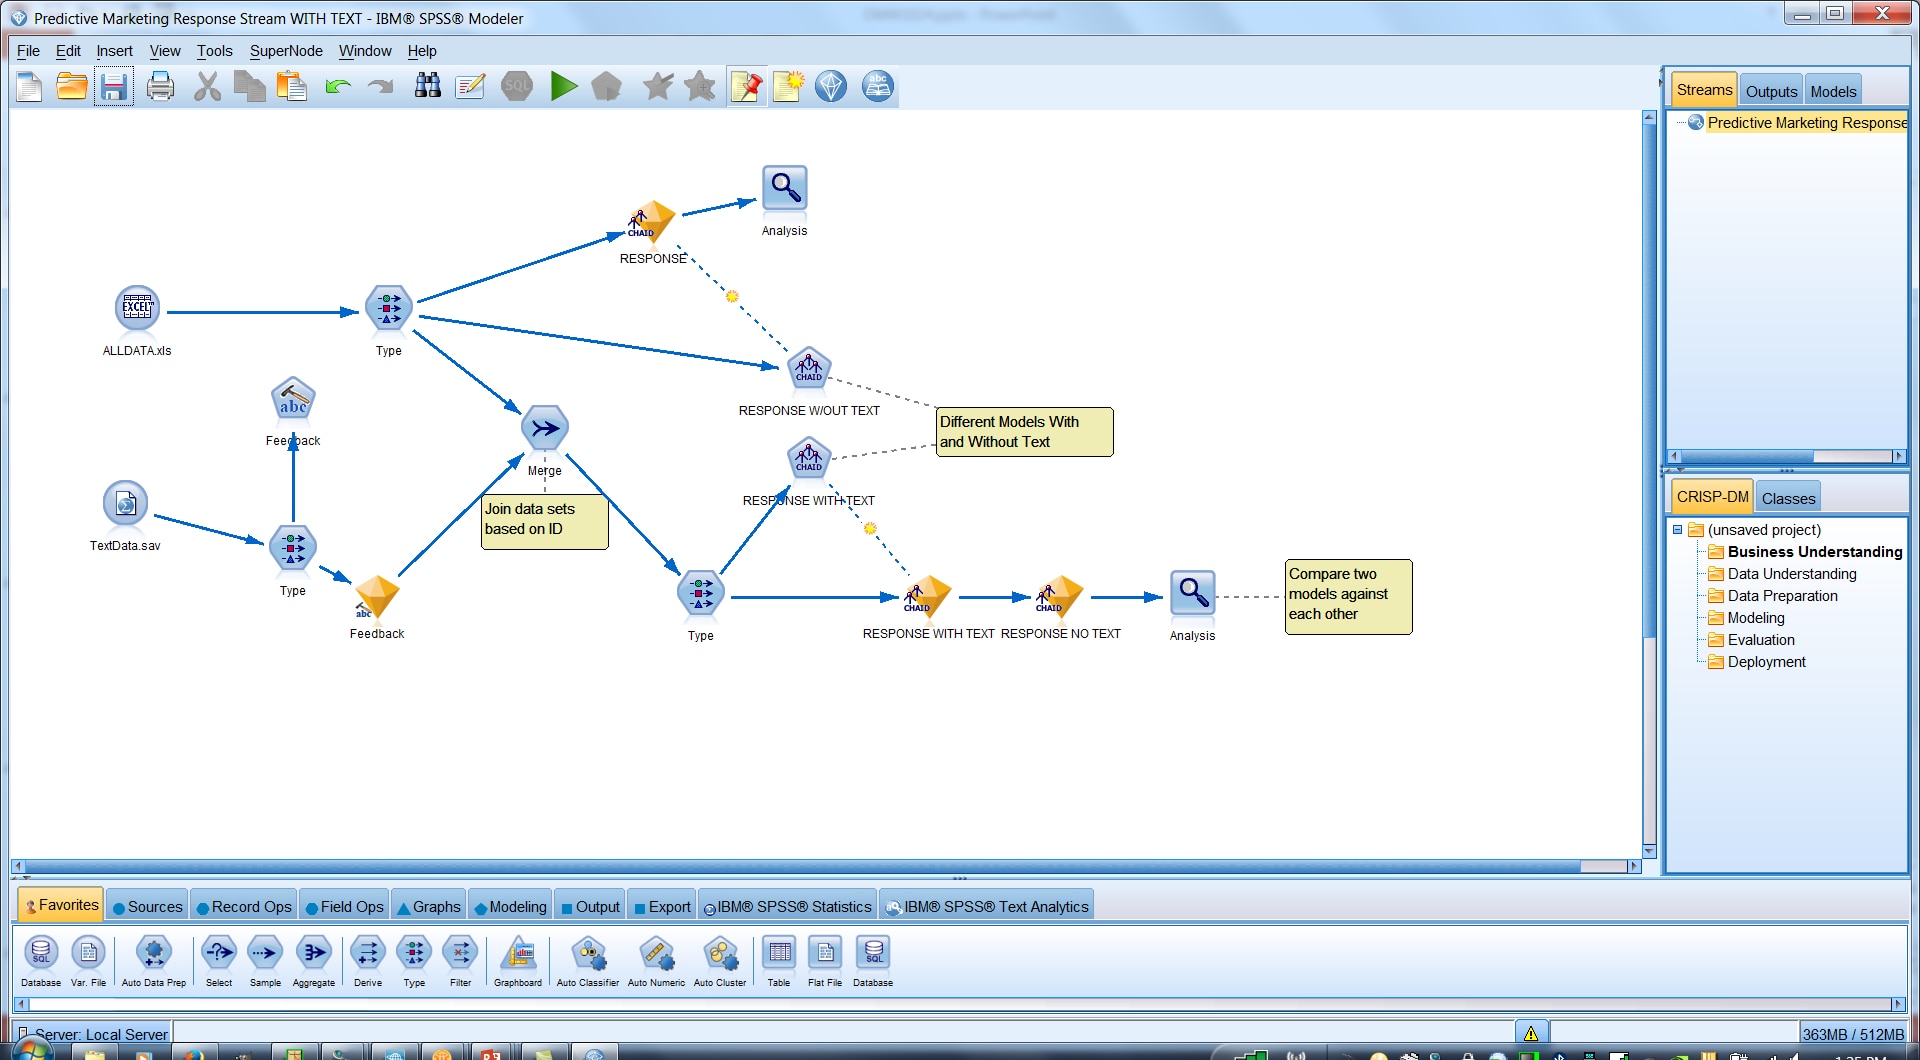 Schema van IBM SPSS Modeler.